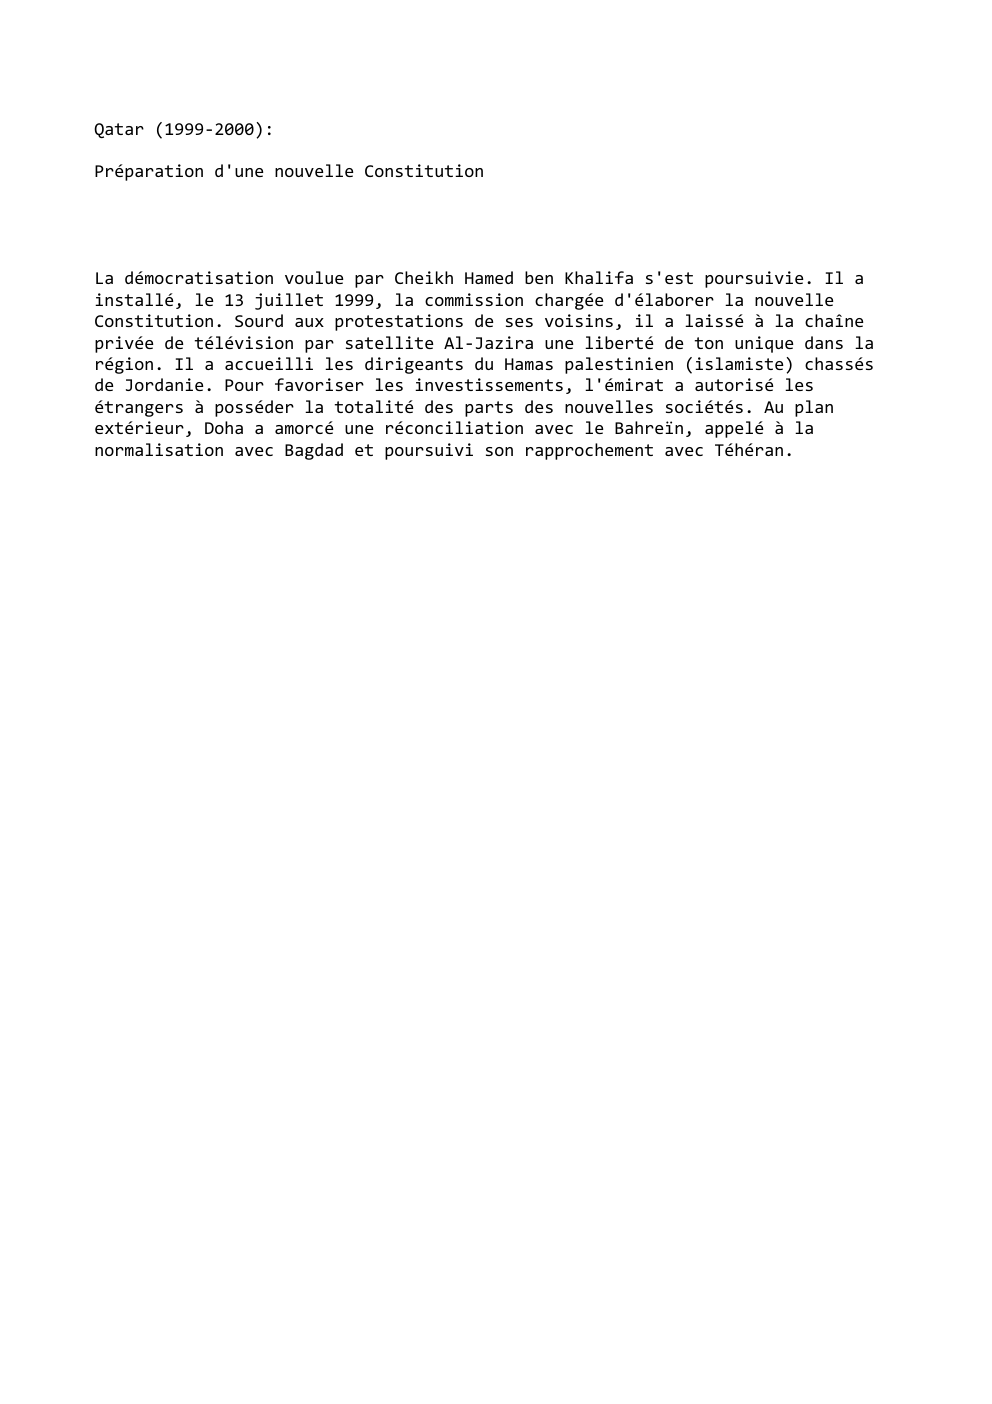 Prévisualisation du document Qatar (1999-2000):
Préparation d'une nouvelle Constitution

La démocratisation voulue par Cheikh Hamed ben Khalifa s'est poursuivie. Il a
installé, le...